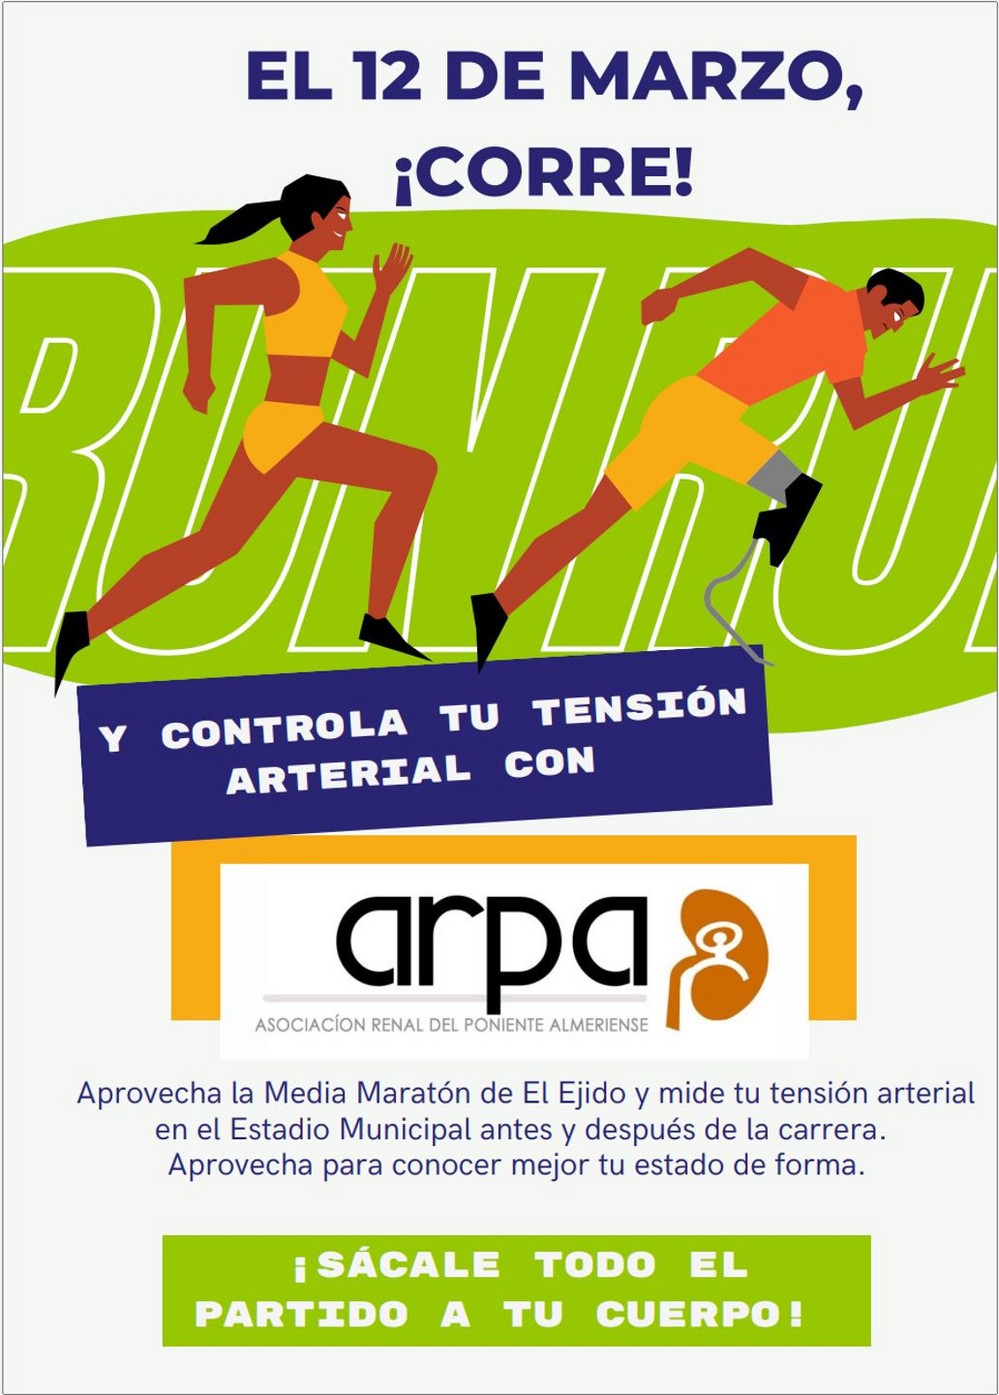 ARPA colaborará con la Media Maratón controlando la tensión arterial a los participantes